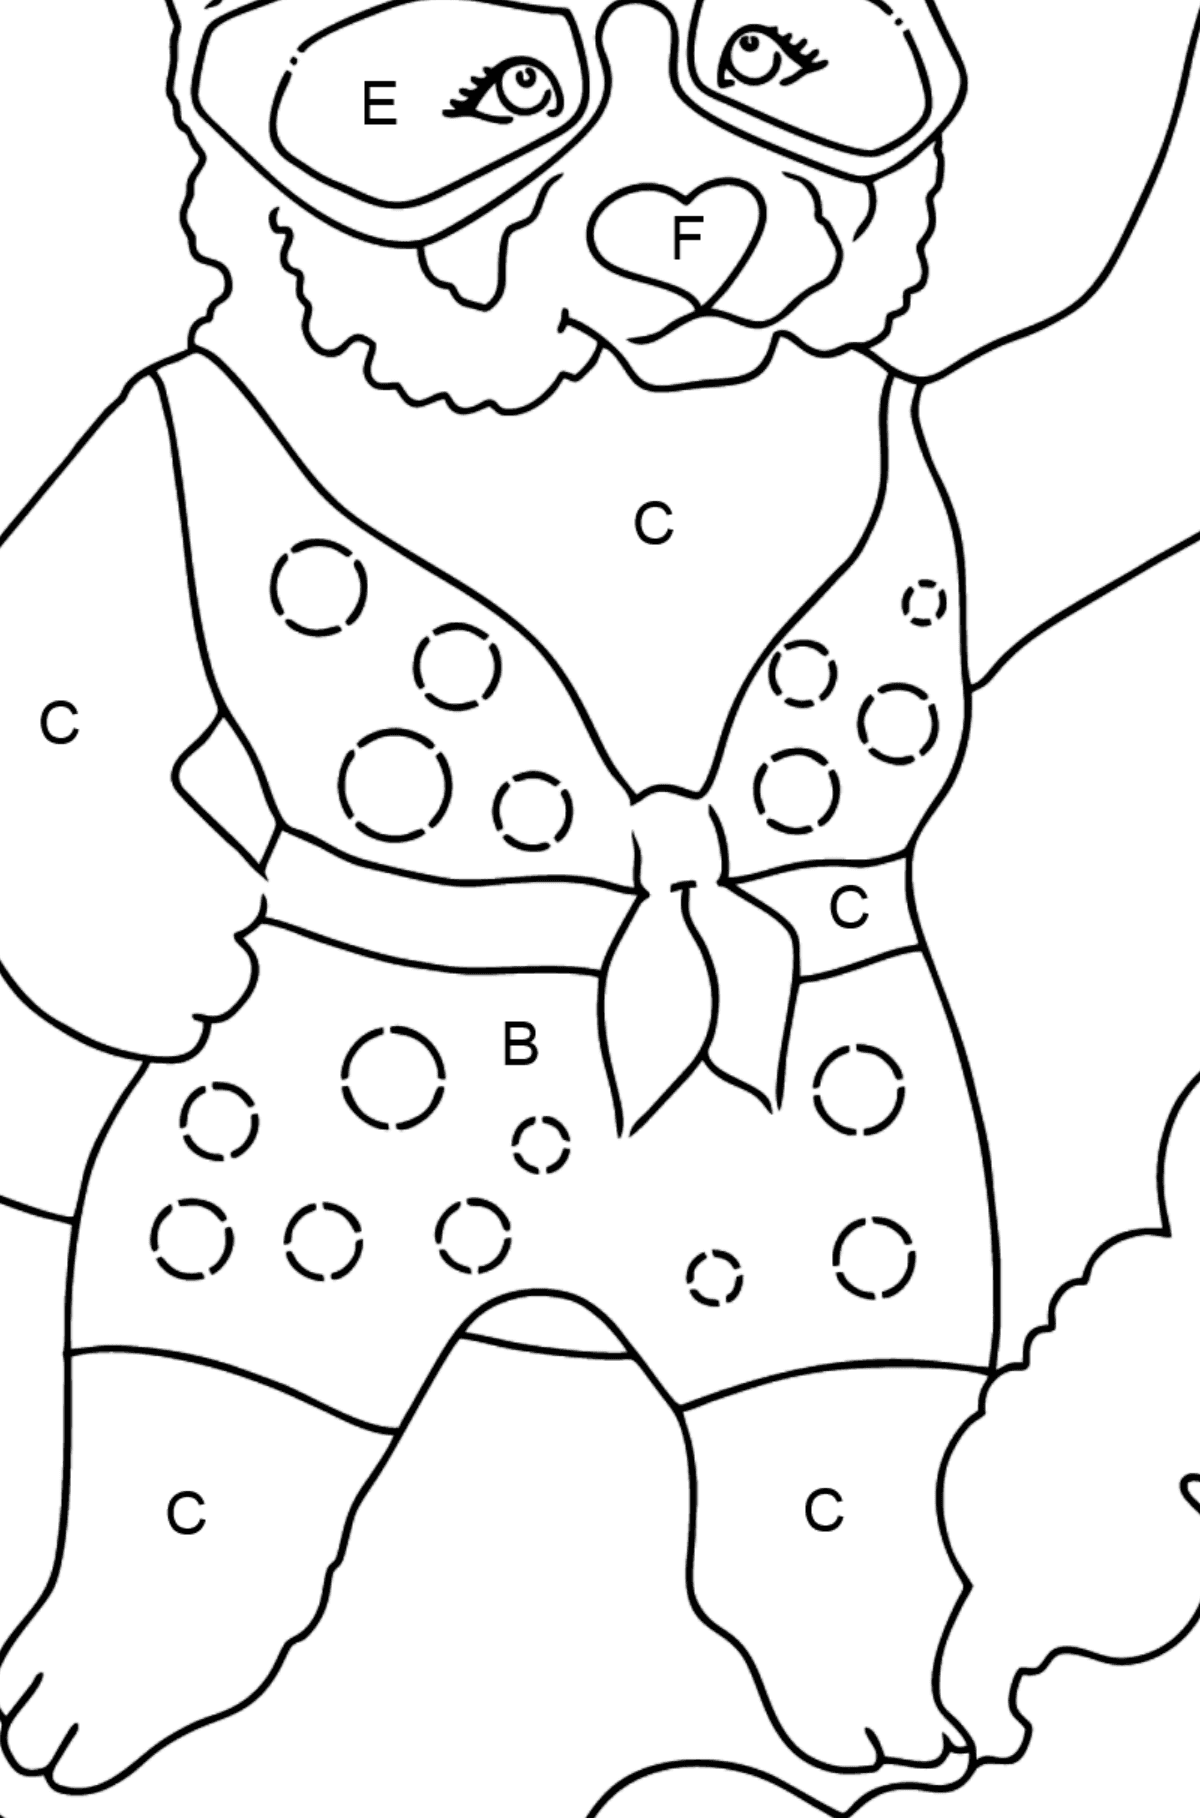 Coloriage Panda De Dessin Animé (Simple) - Coloriage par Lettres pour les Enfants